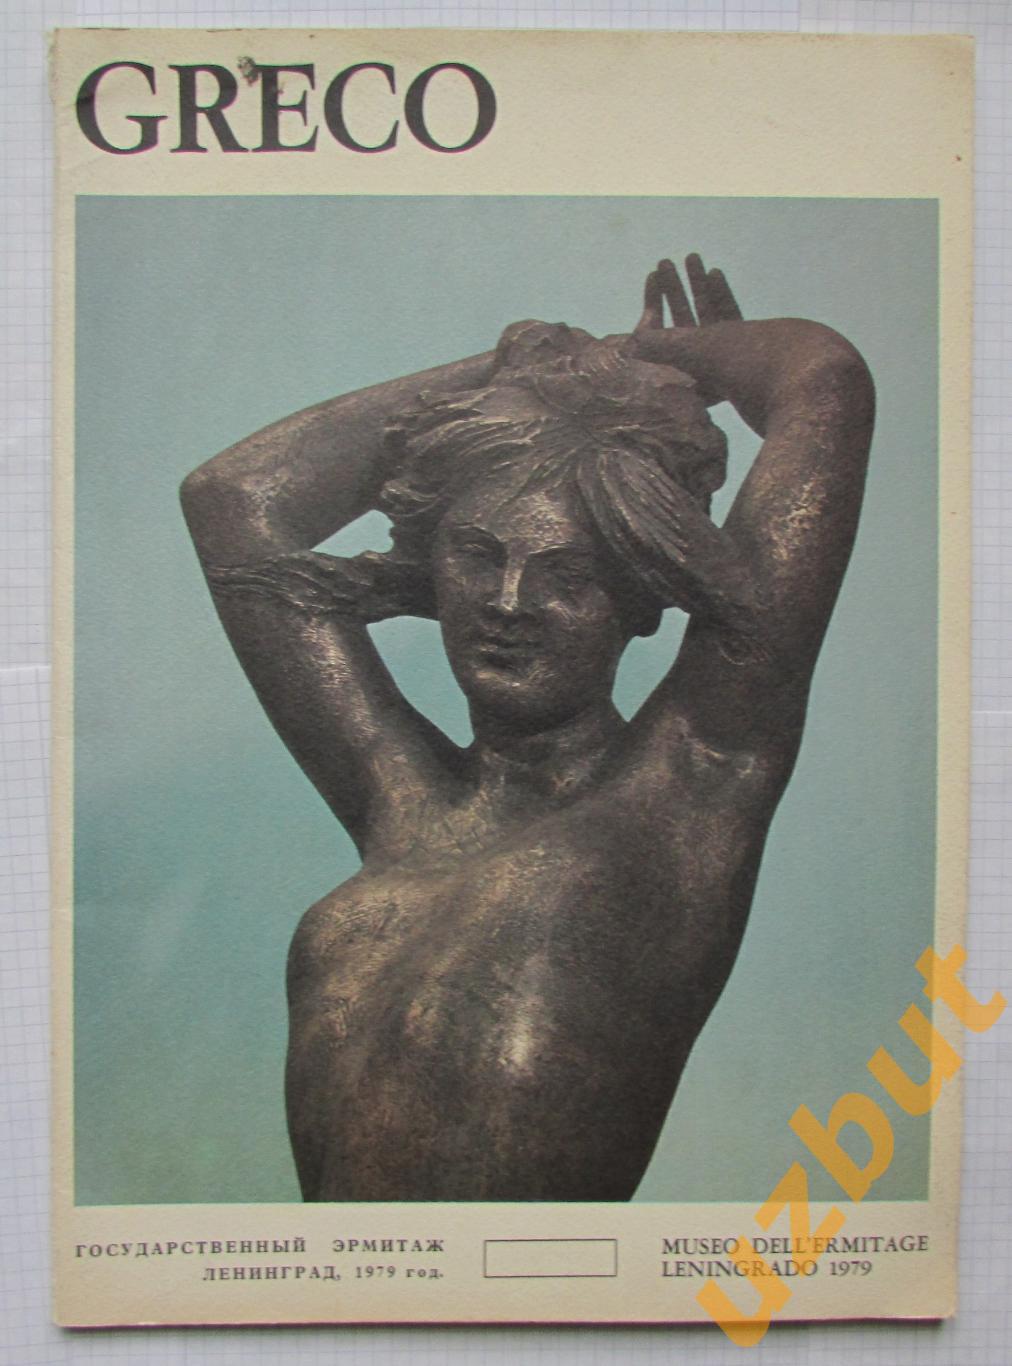 Эмилио Греко каталог 1979